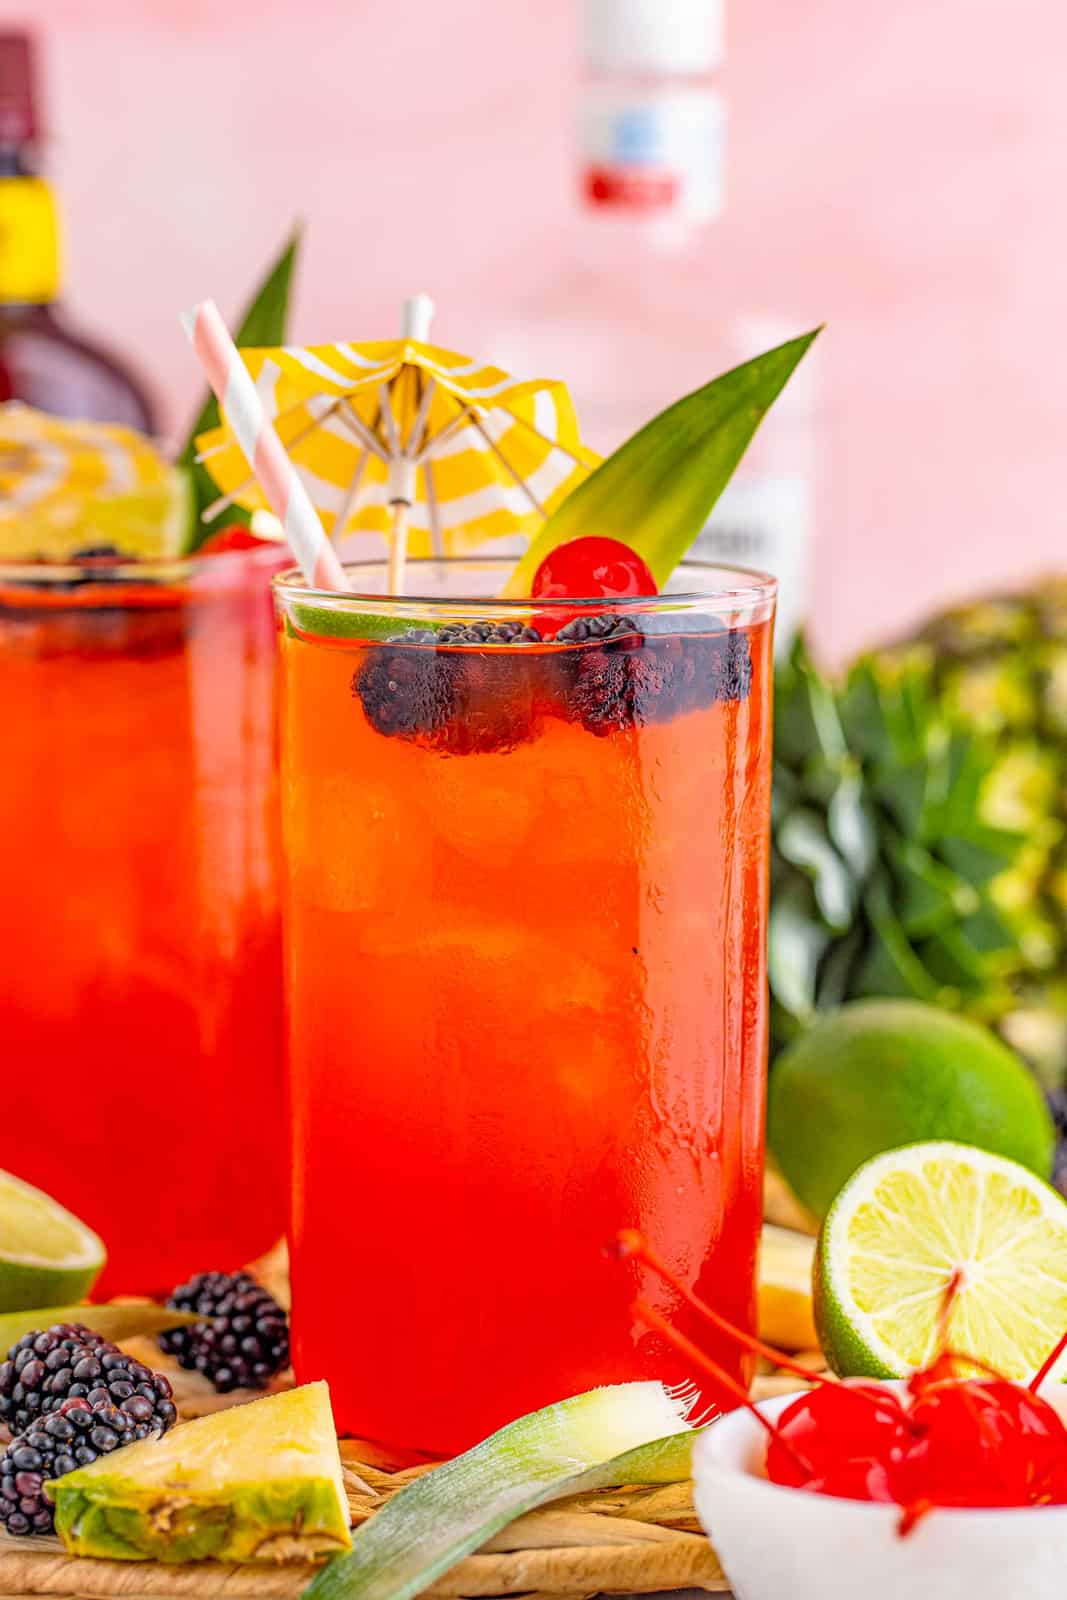 Закройте коктейль Rum Runner с фруктами, окружающими его.